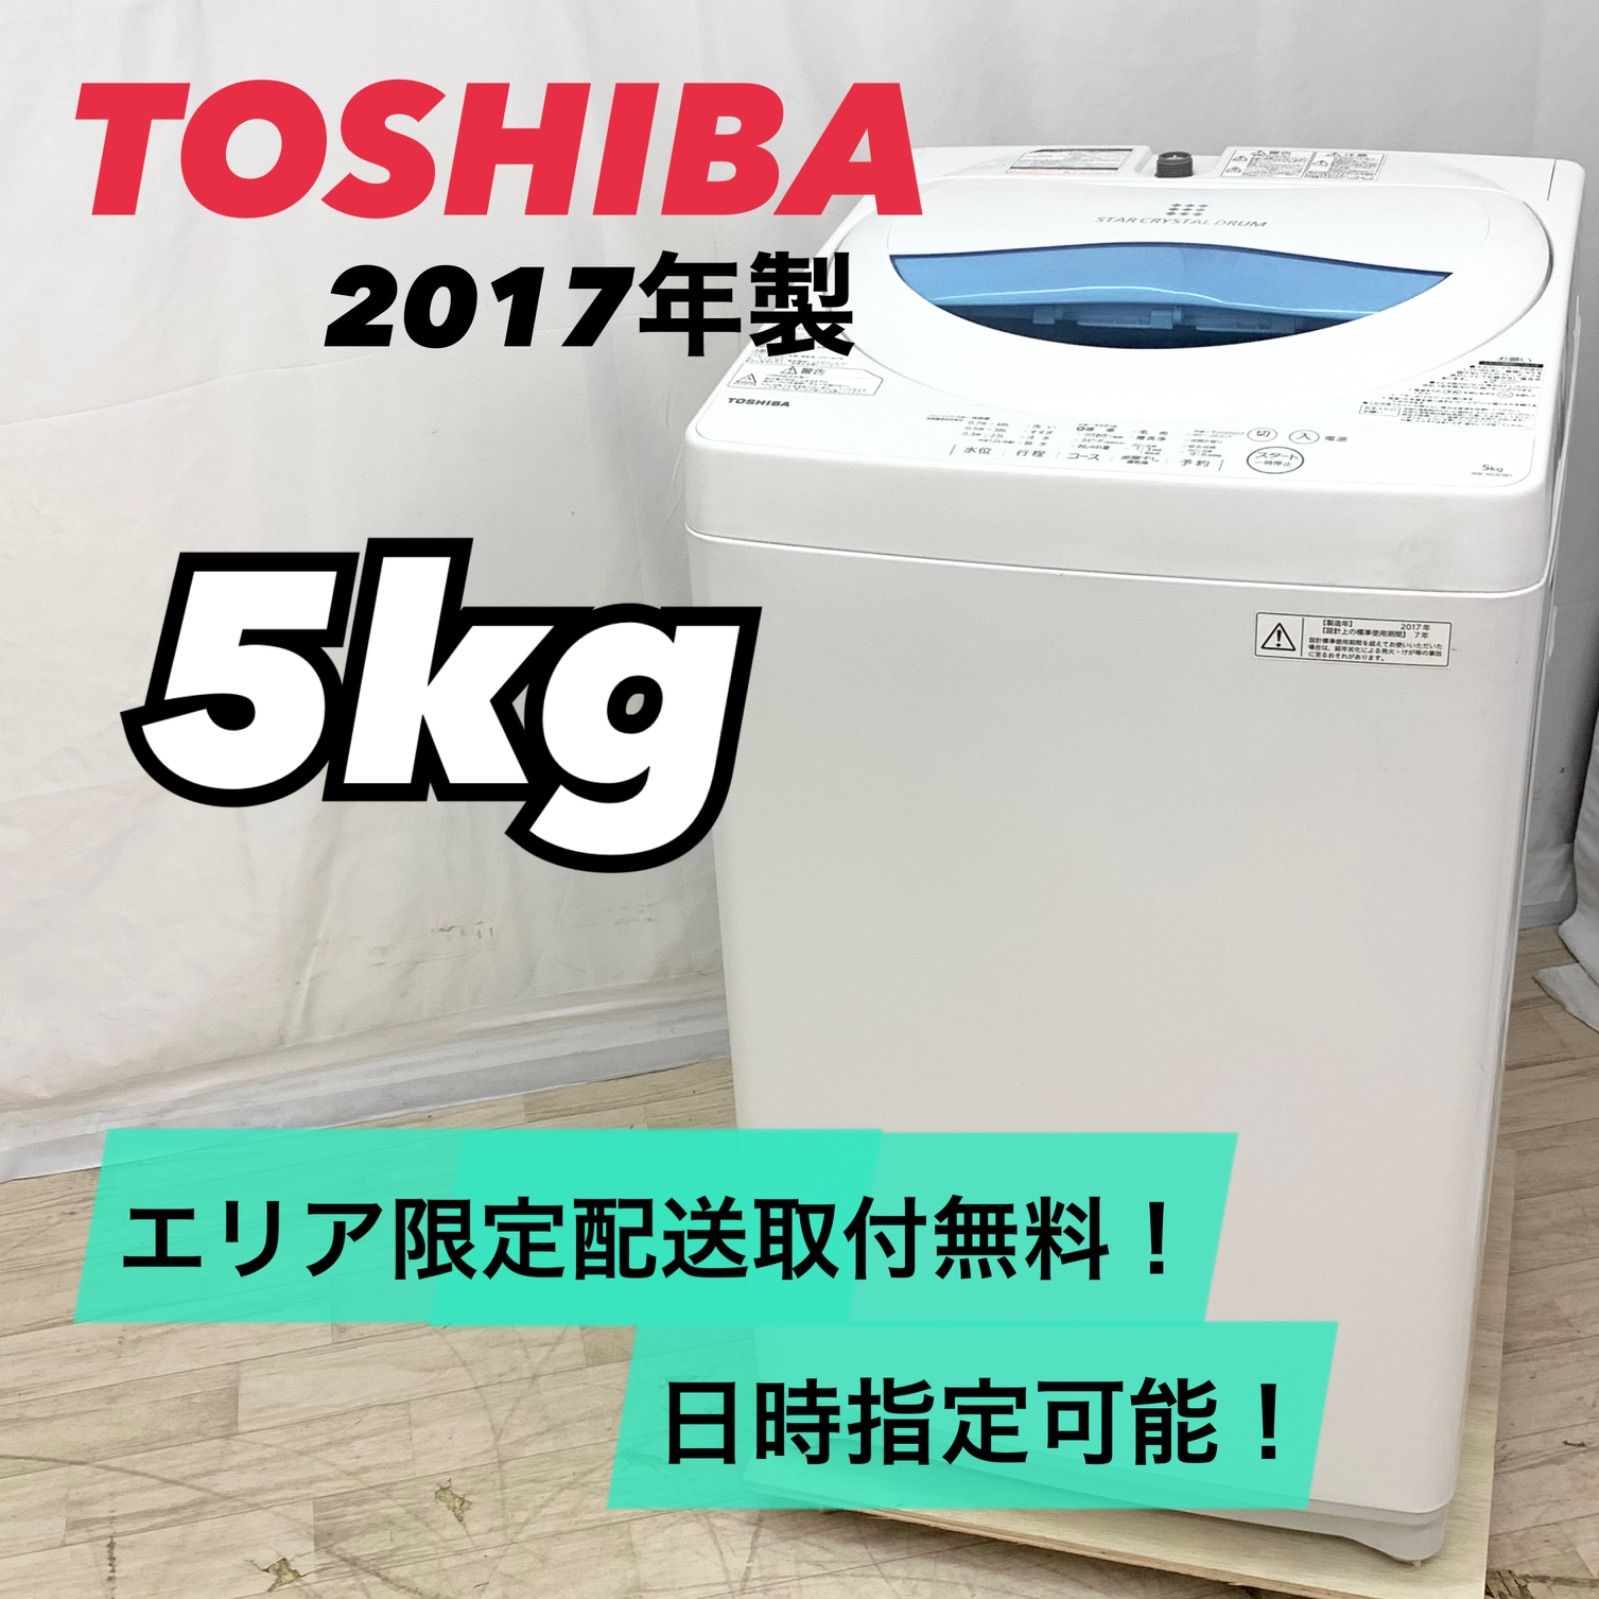 しおこーじ様専用】TOSHIBA 東芝 5kg 縦型洗濯機 AW-5G5(W) 2017年製